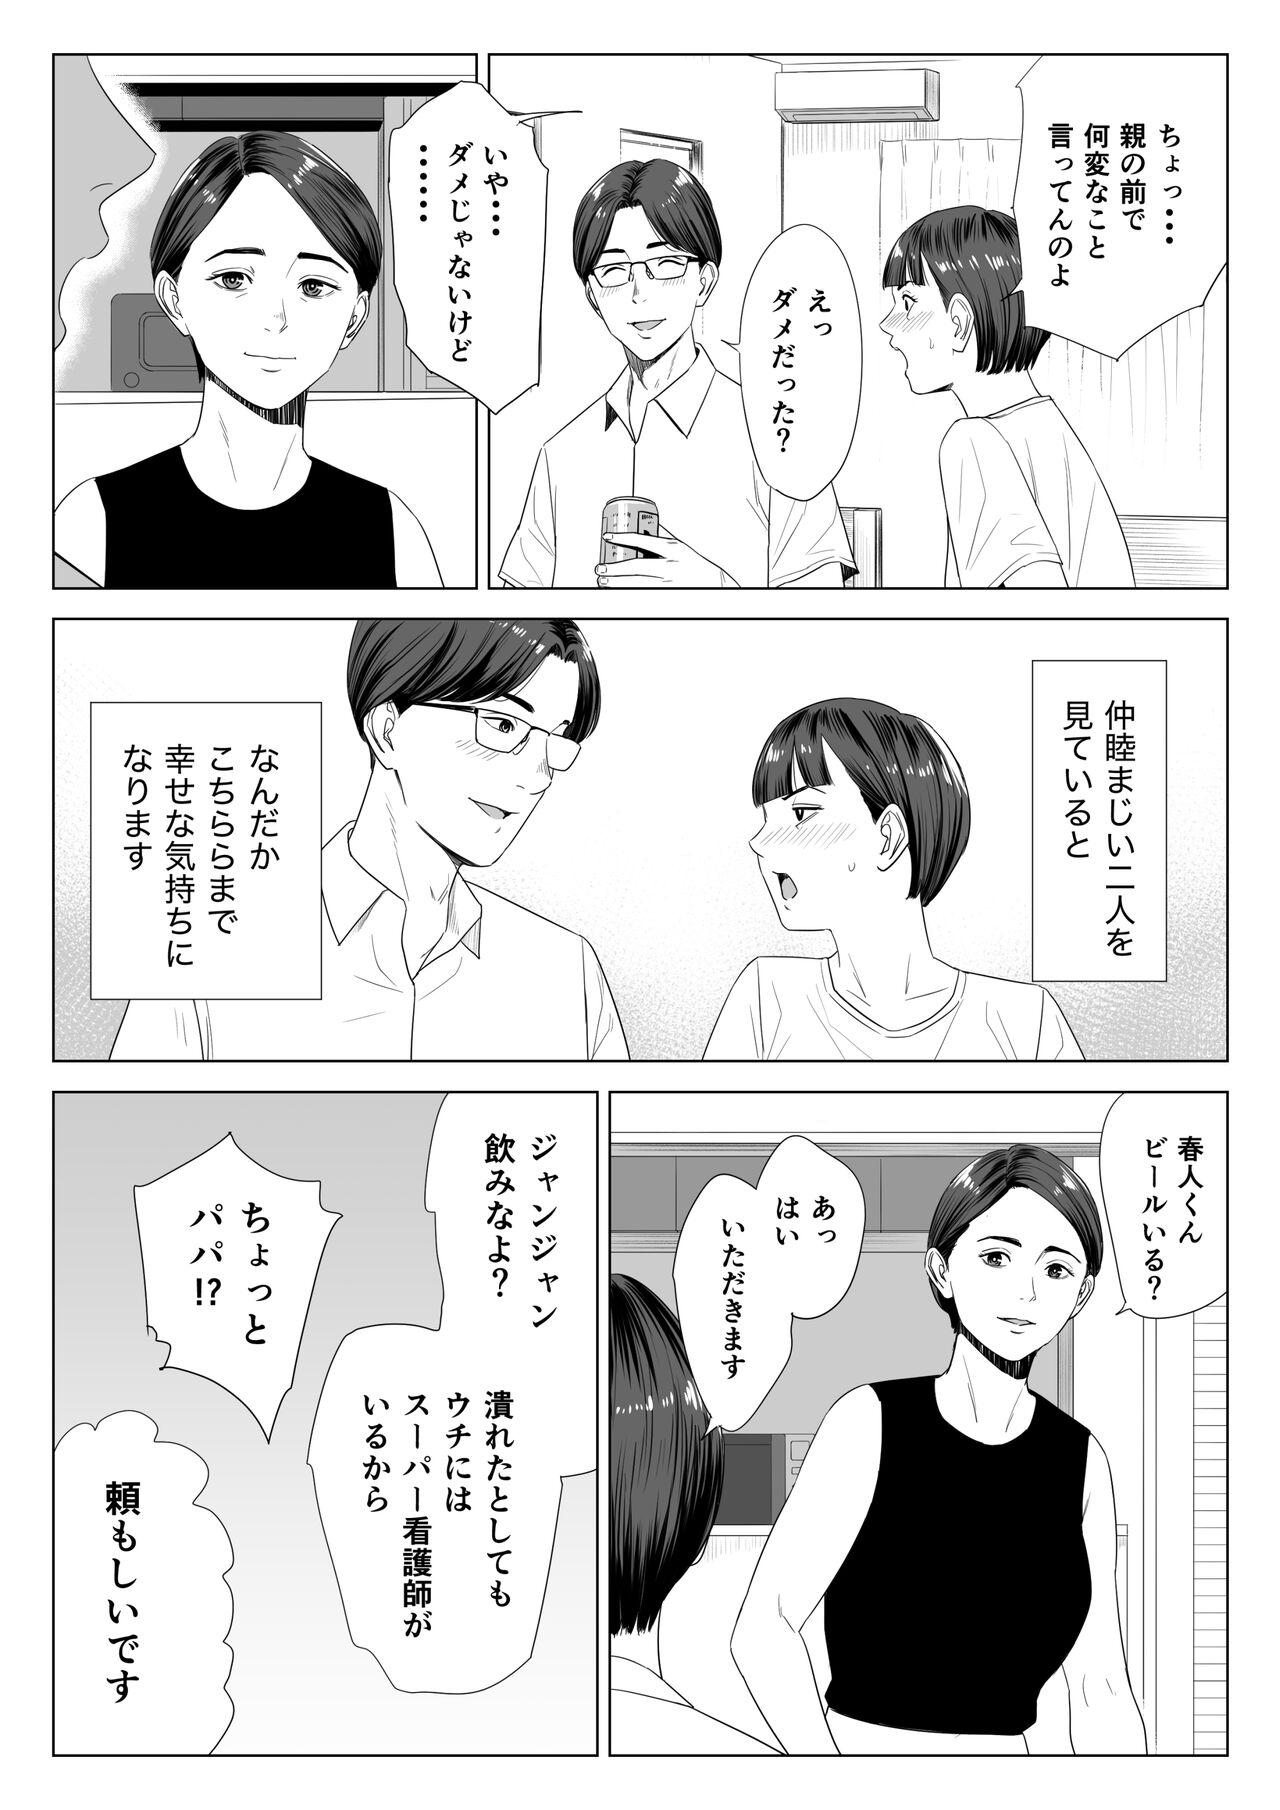 Friend Gibo no tsukaeru karada. - Original Fitness - Page 7